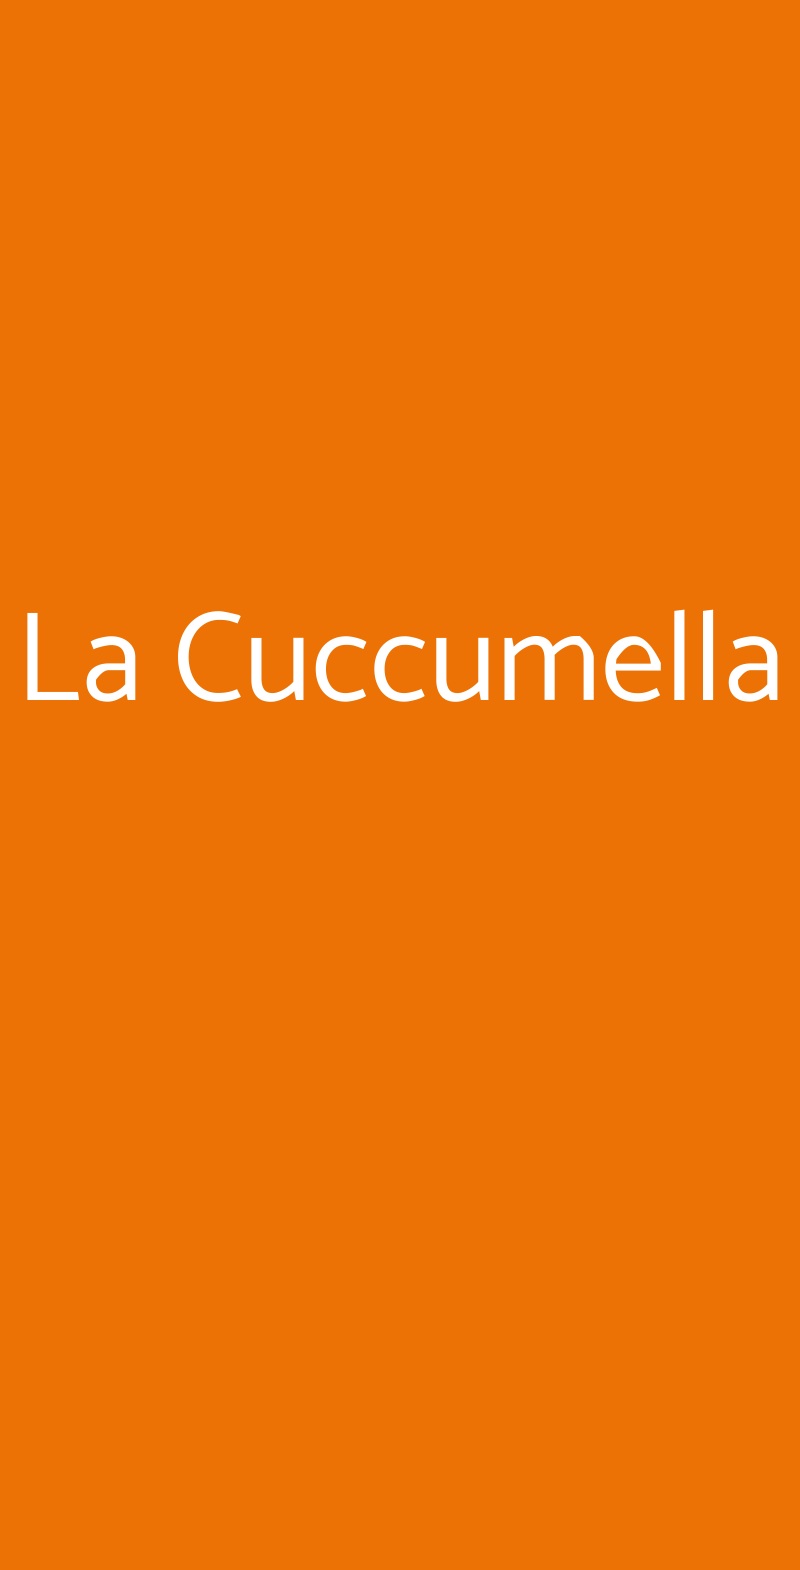 La Cuccumella Napoli menù 1 pagina